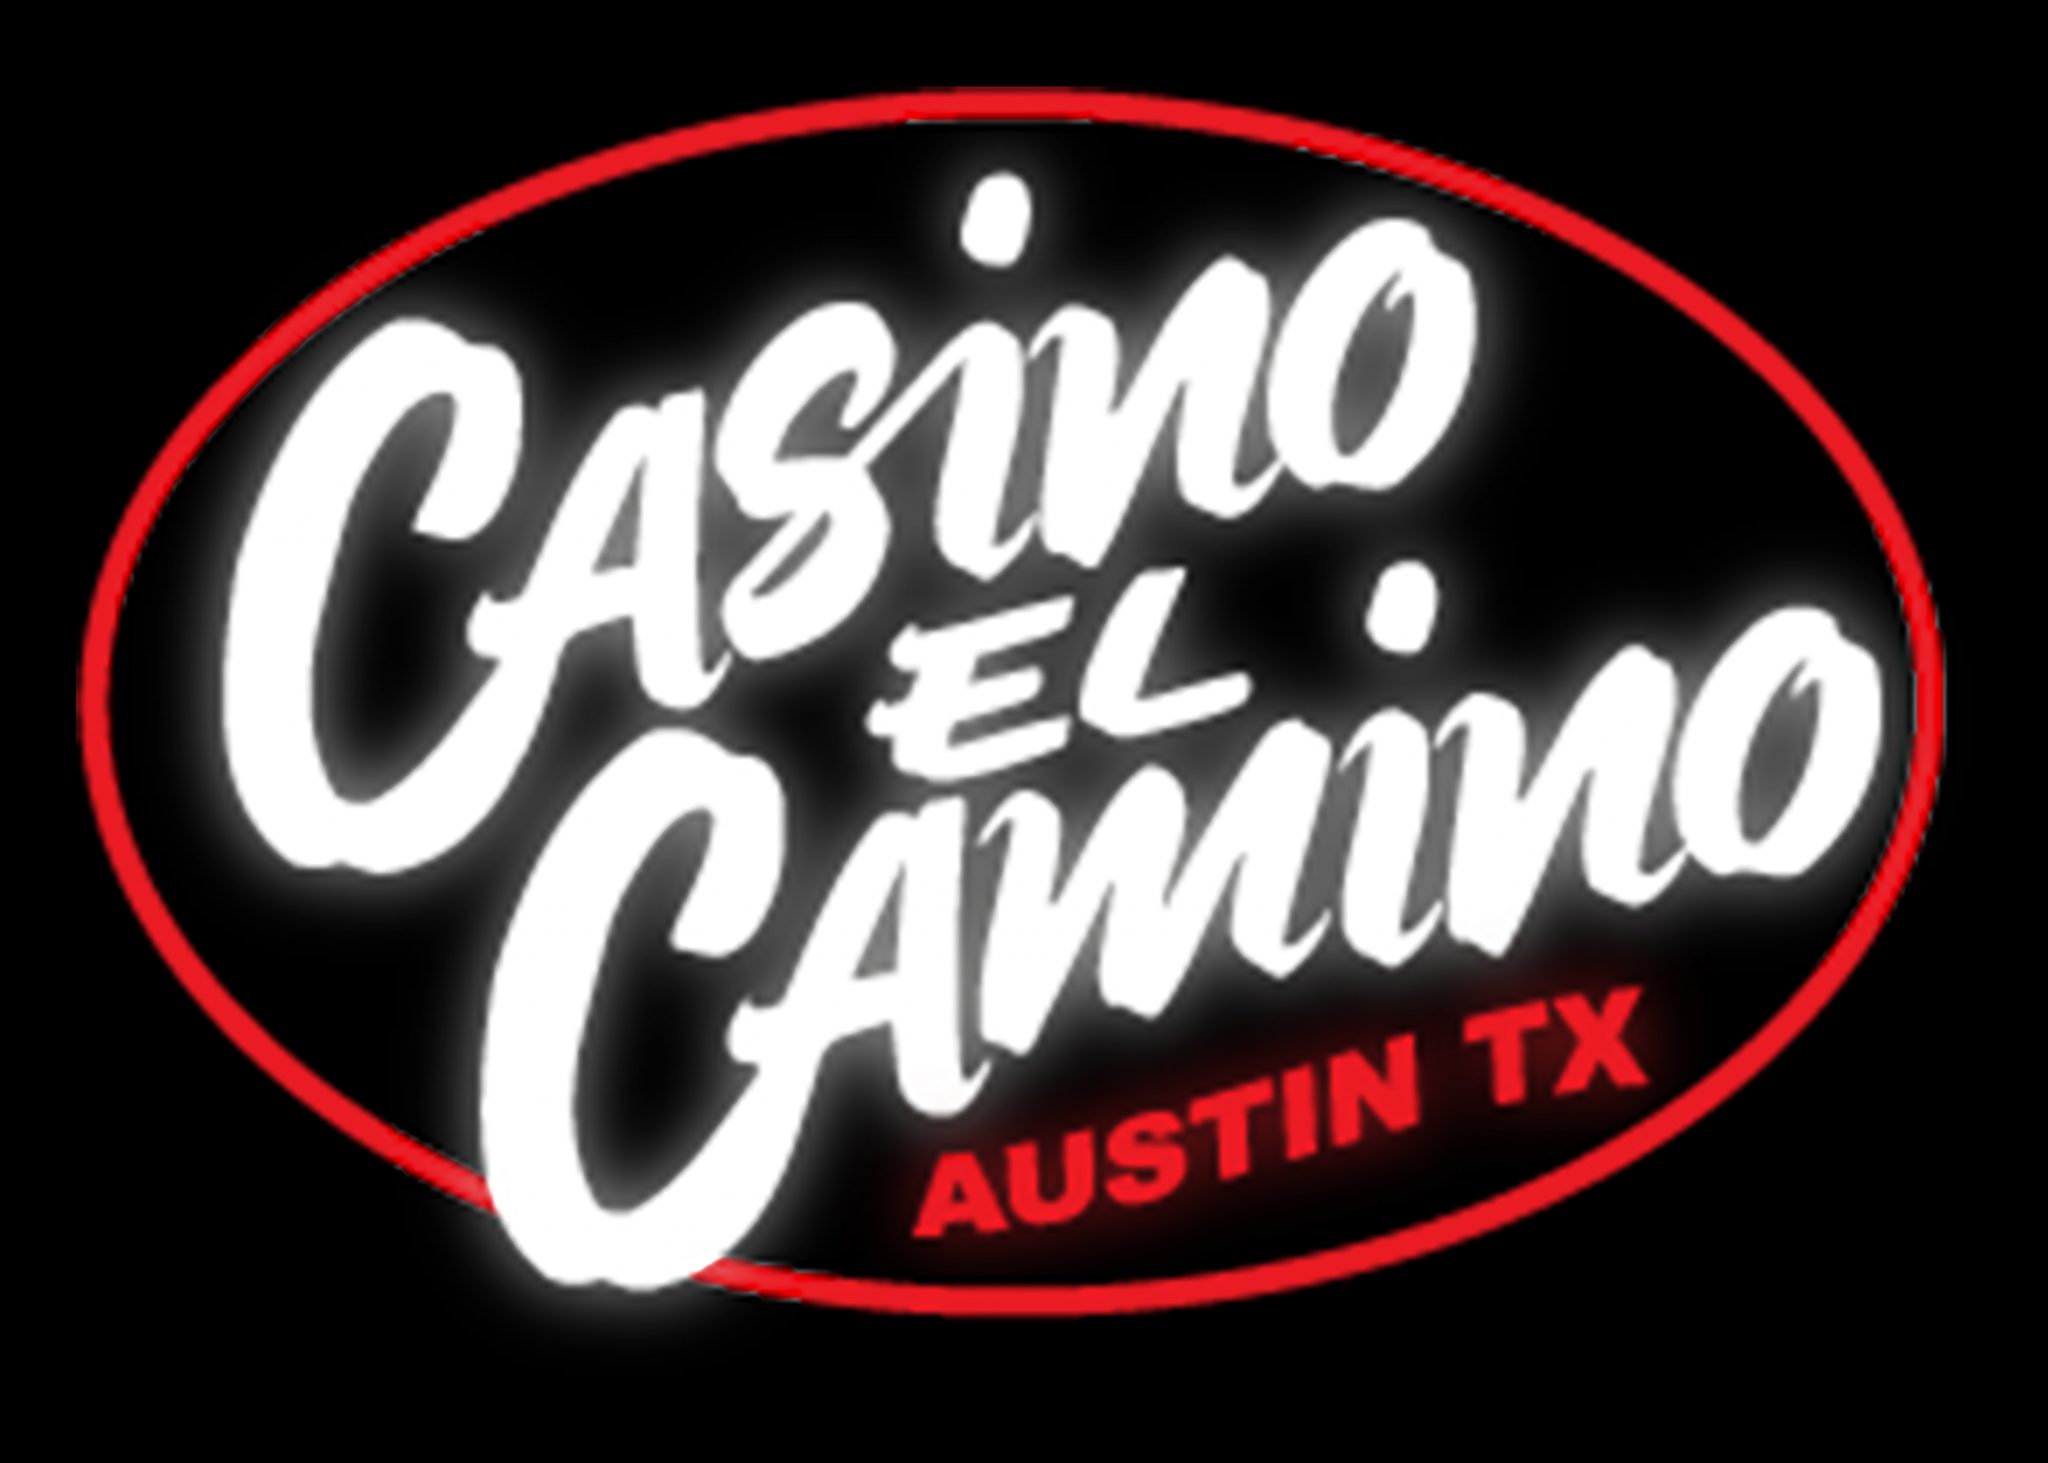 Casino El Camino logo